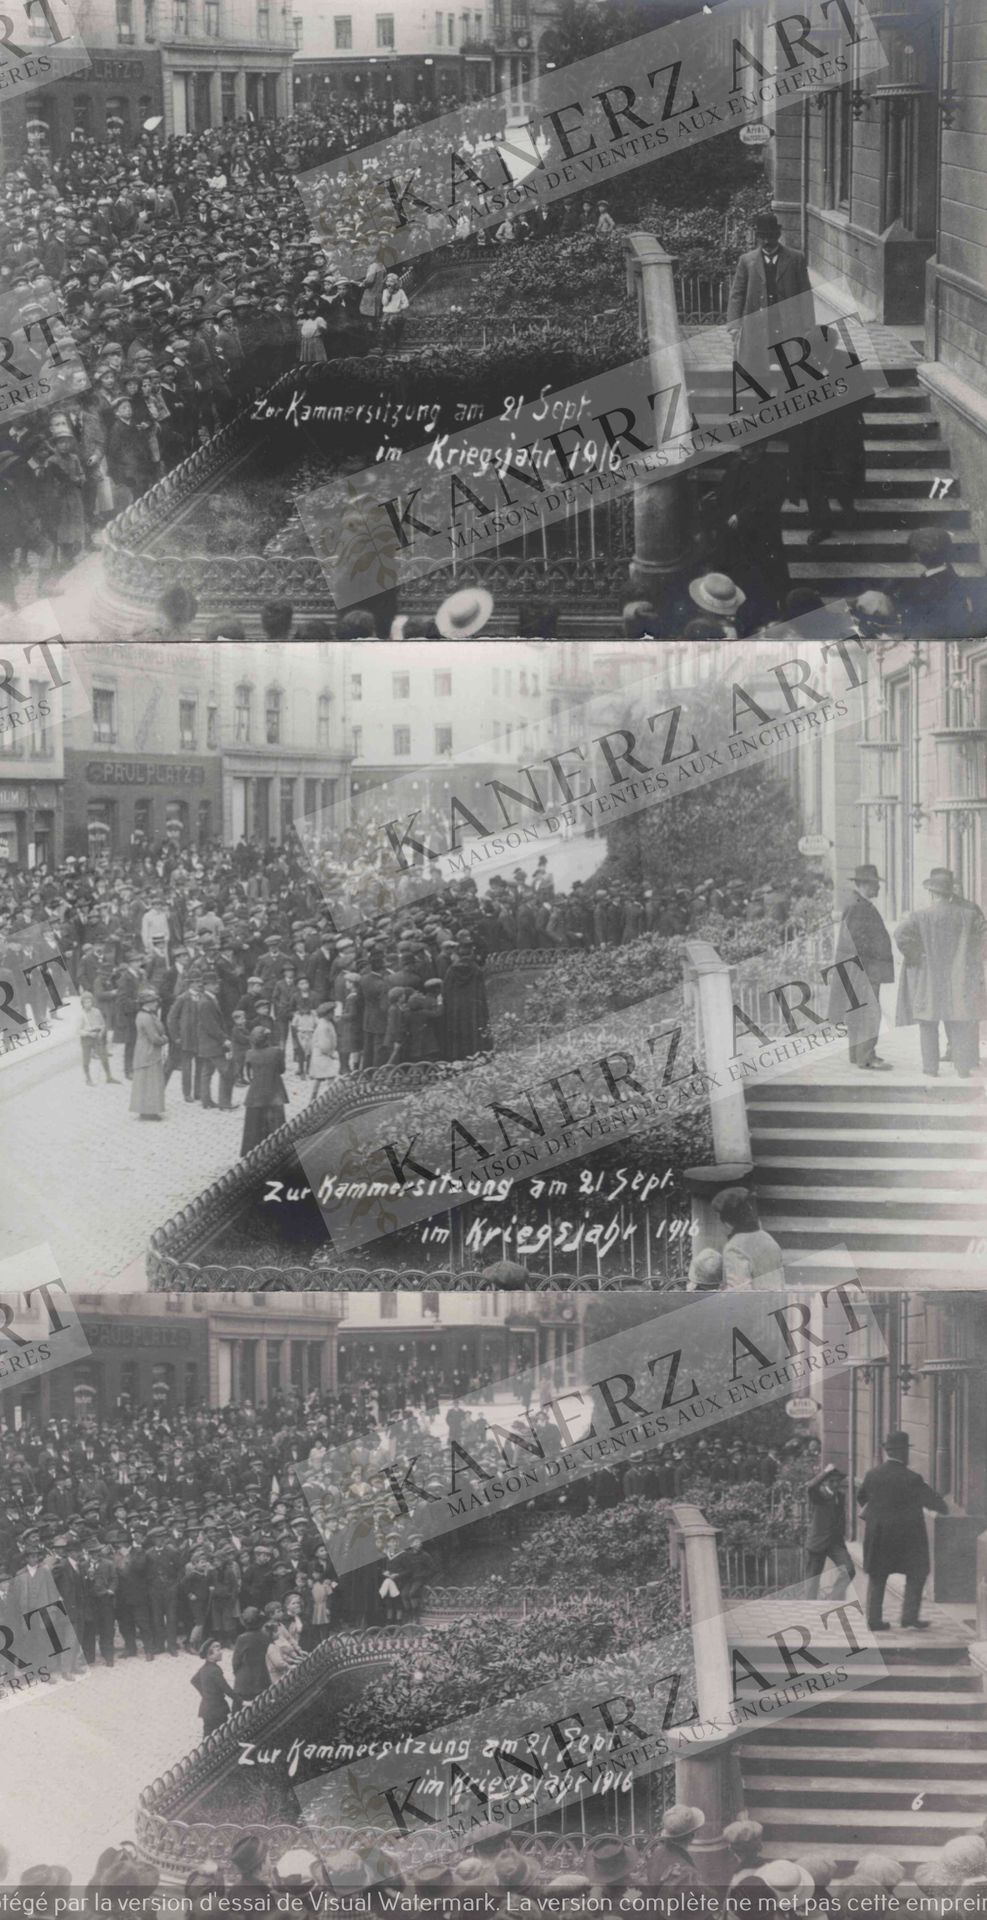 Null (WAR I) Fotokarte einer Warteschlange "Eier und Schmalz Ausgabe im Kriegsja&hellip;